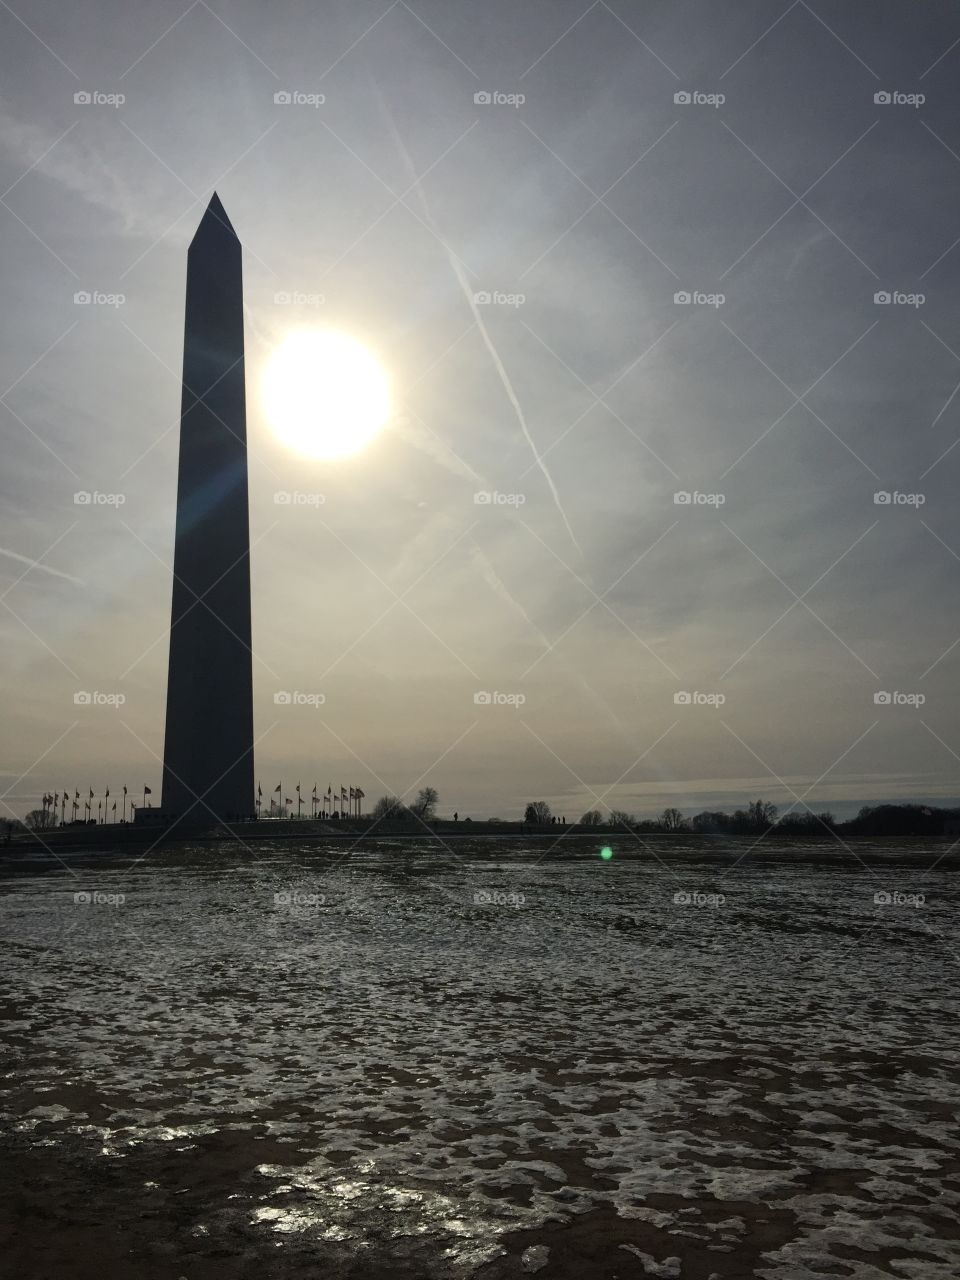 Washington Monument 